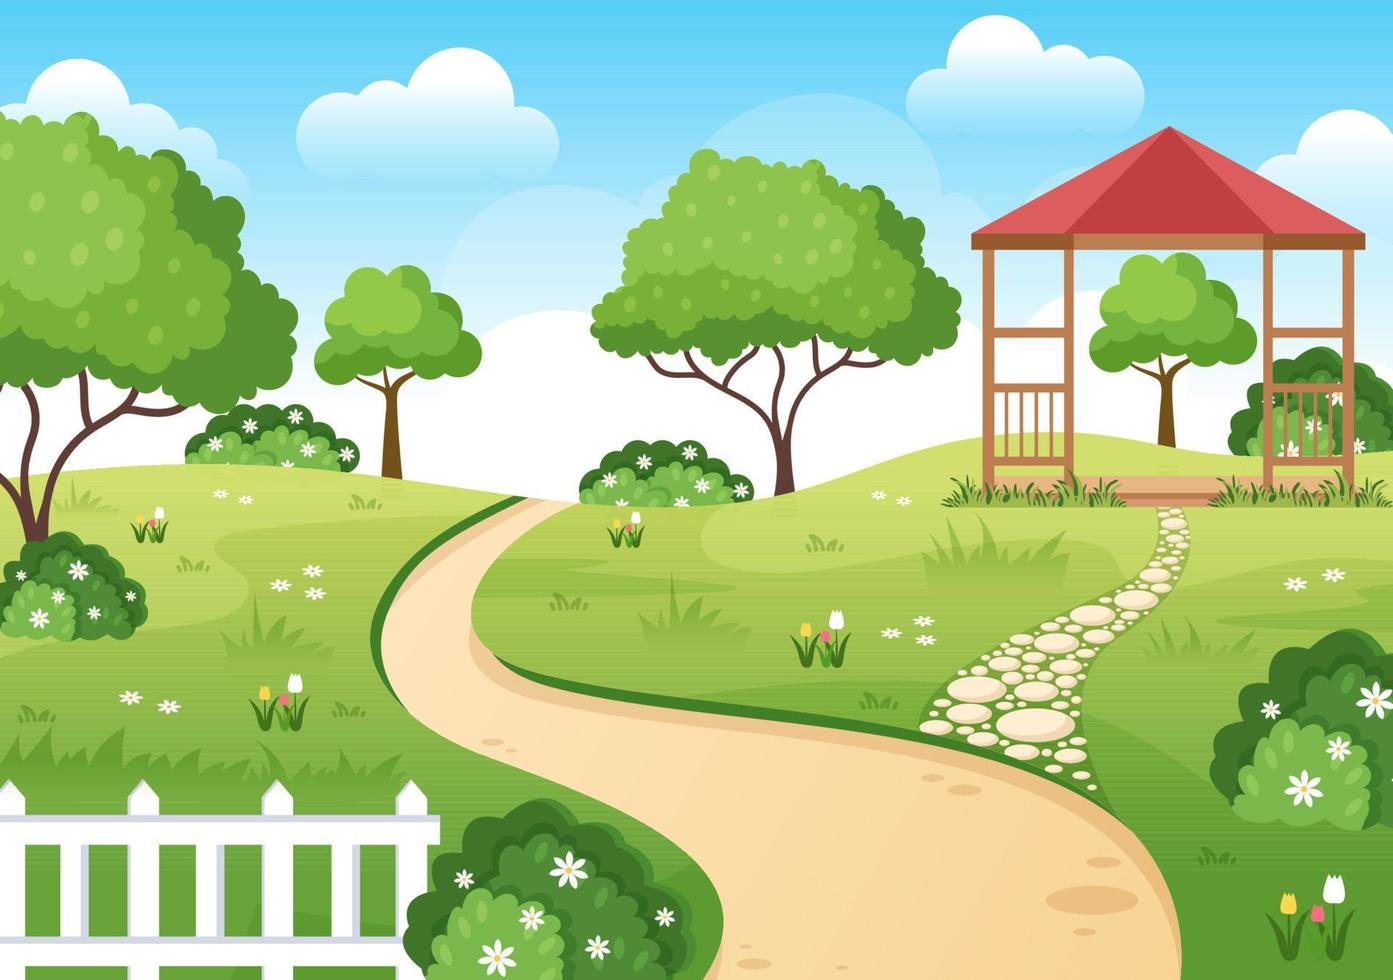 prachtige tuin cartoon achtergrond afbeelding met een landschap aard van plant, bloemen, boom en groen gras in platte ontwerpstijl vector